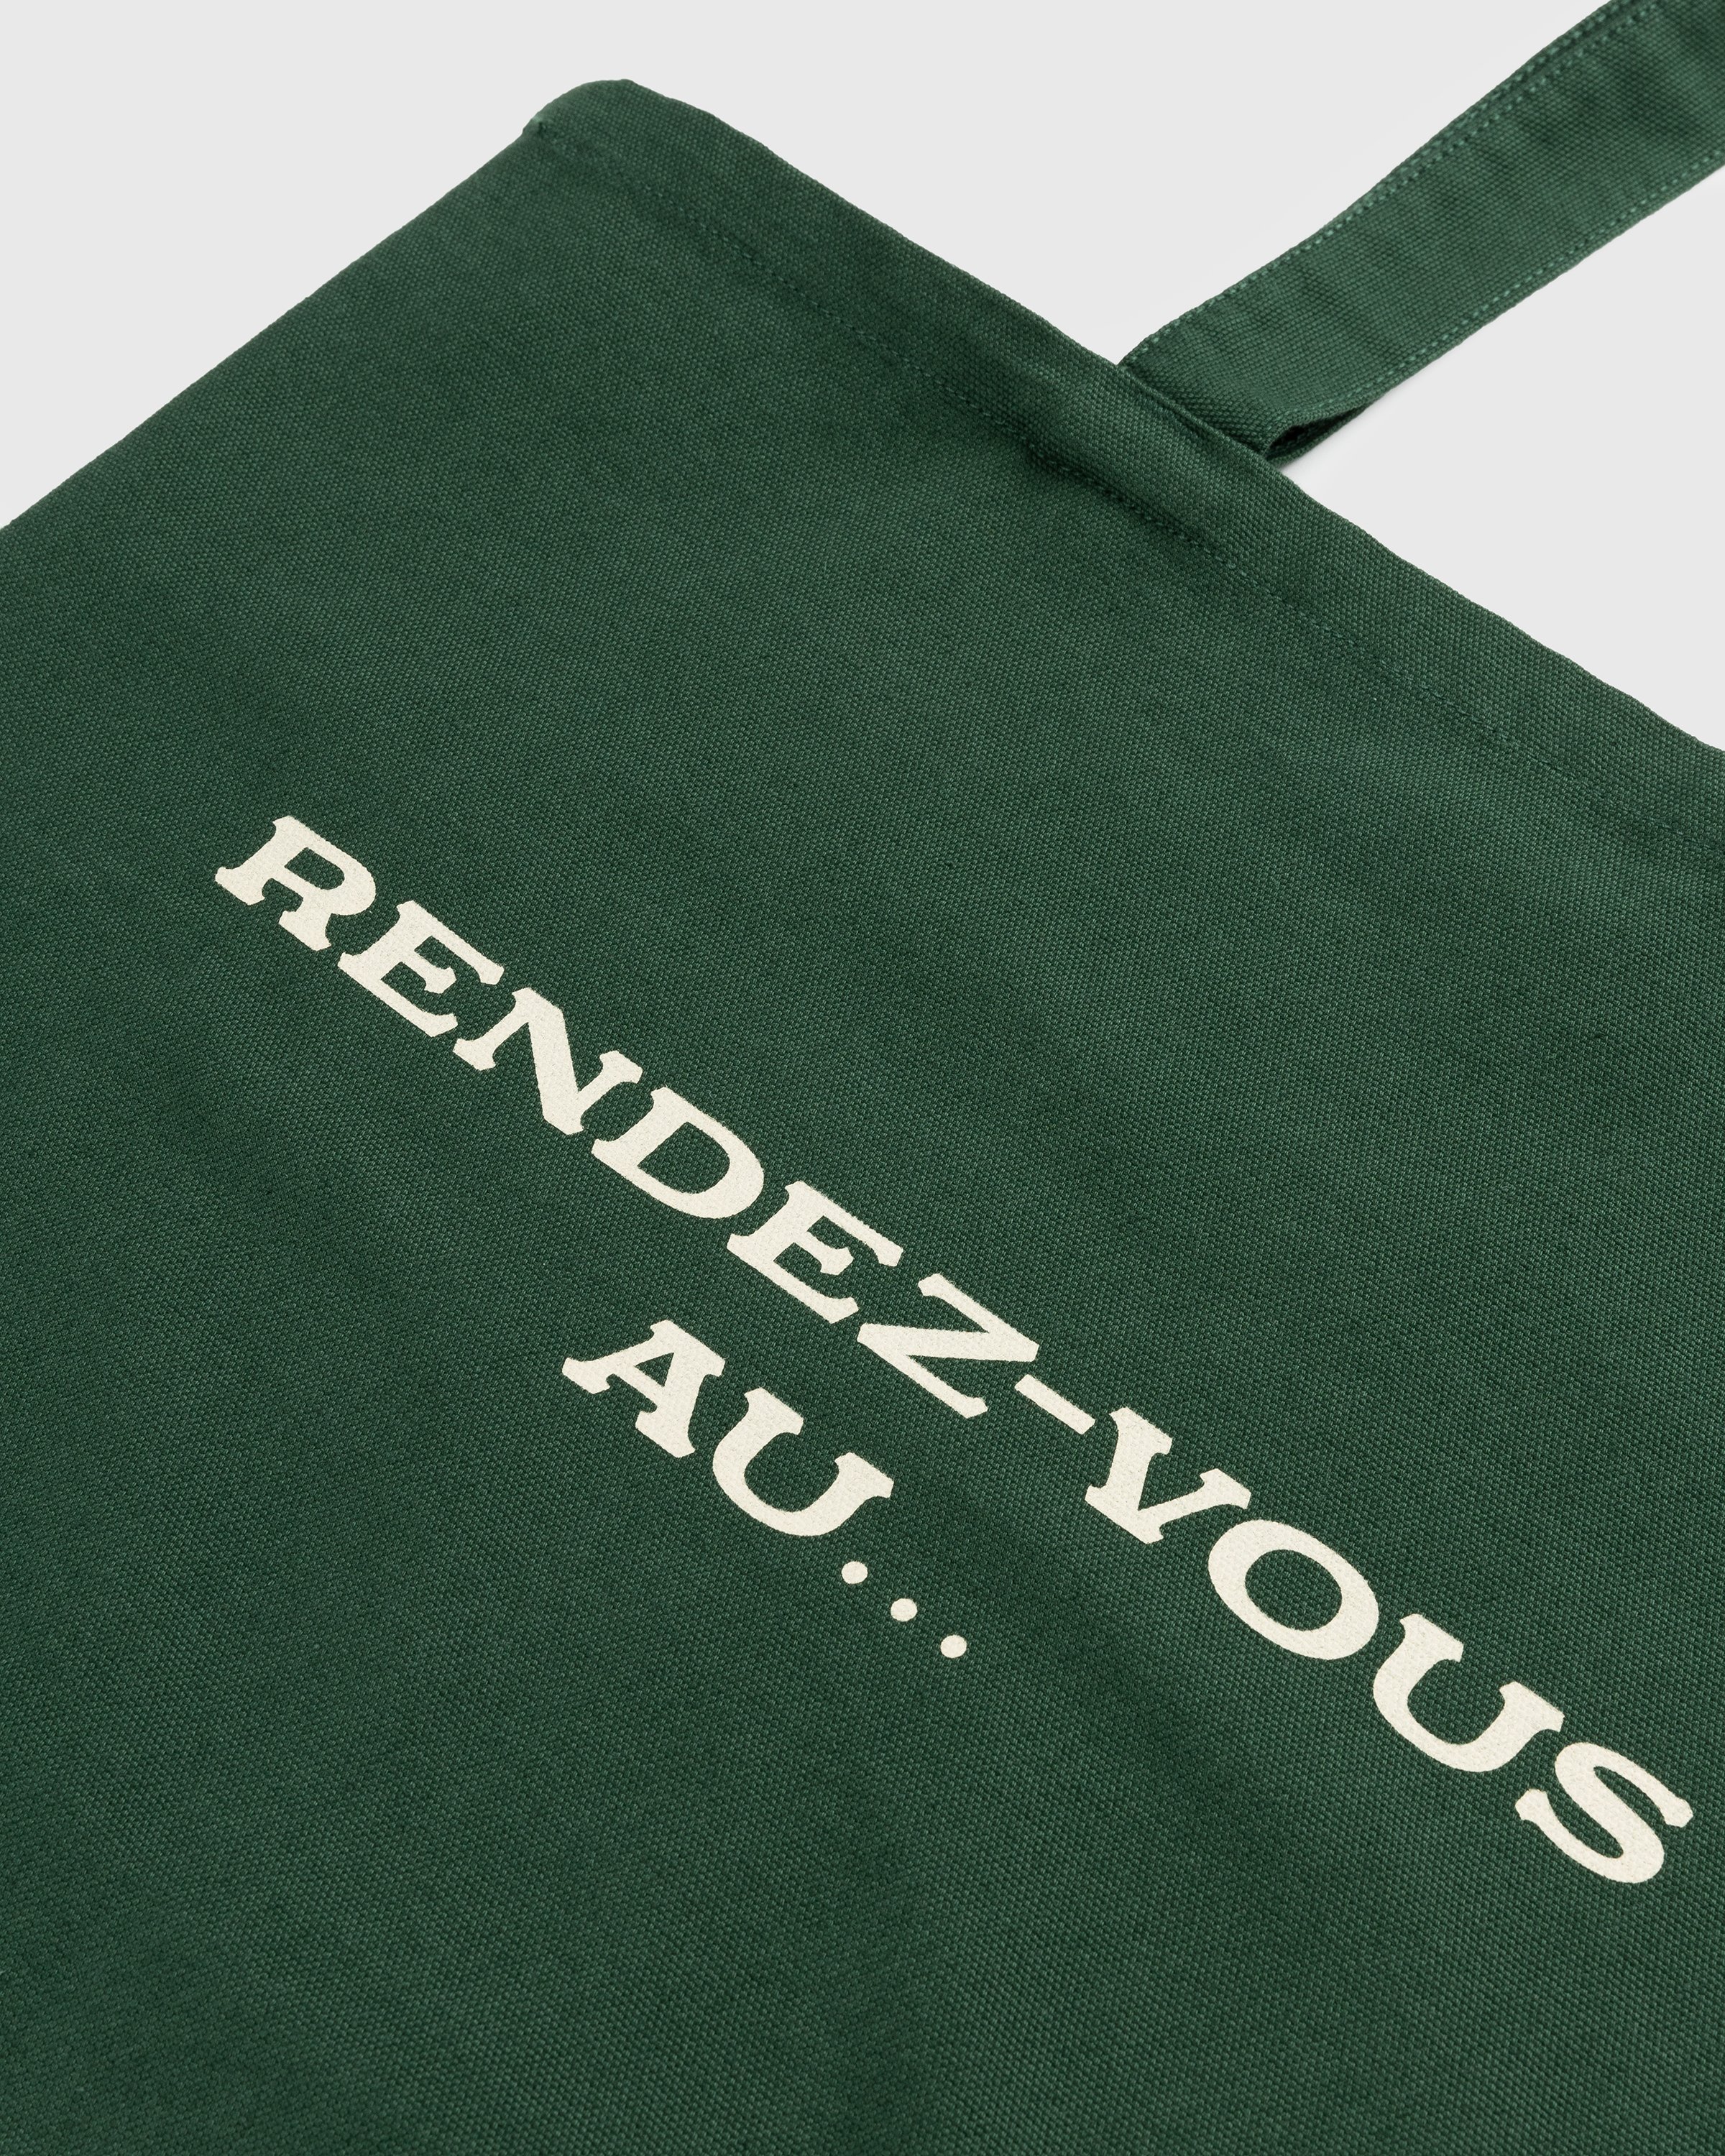 Café de Flore x Highsnobiety - Not In Paris 4 Rendez-vous Au Tote Bag Green - Accessories - Green - Image 5